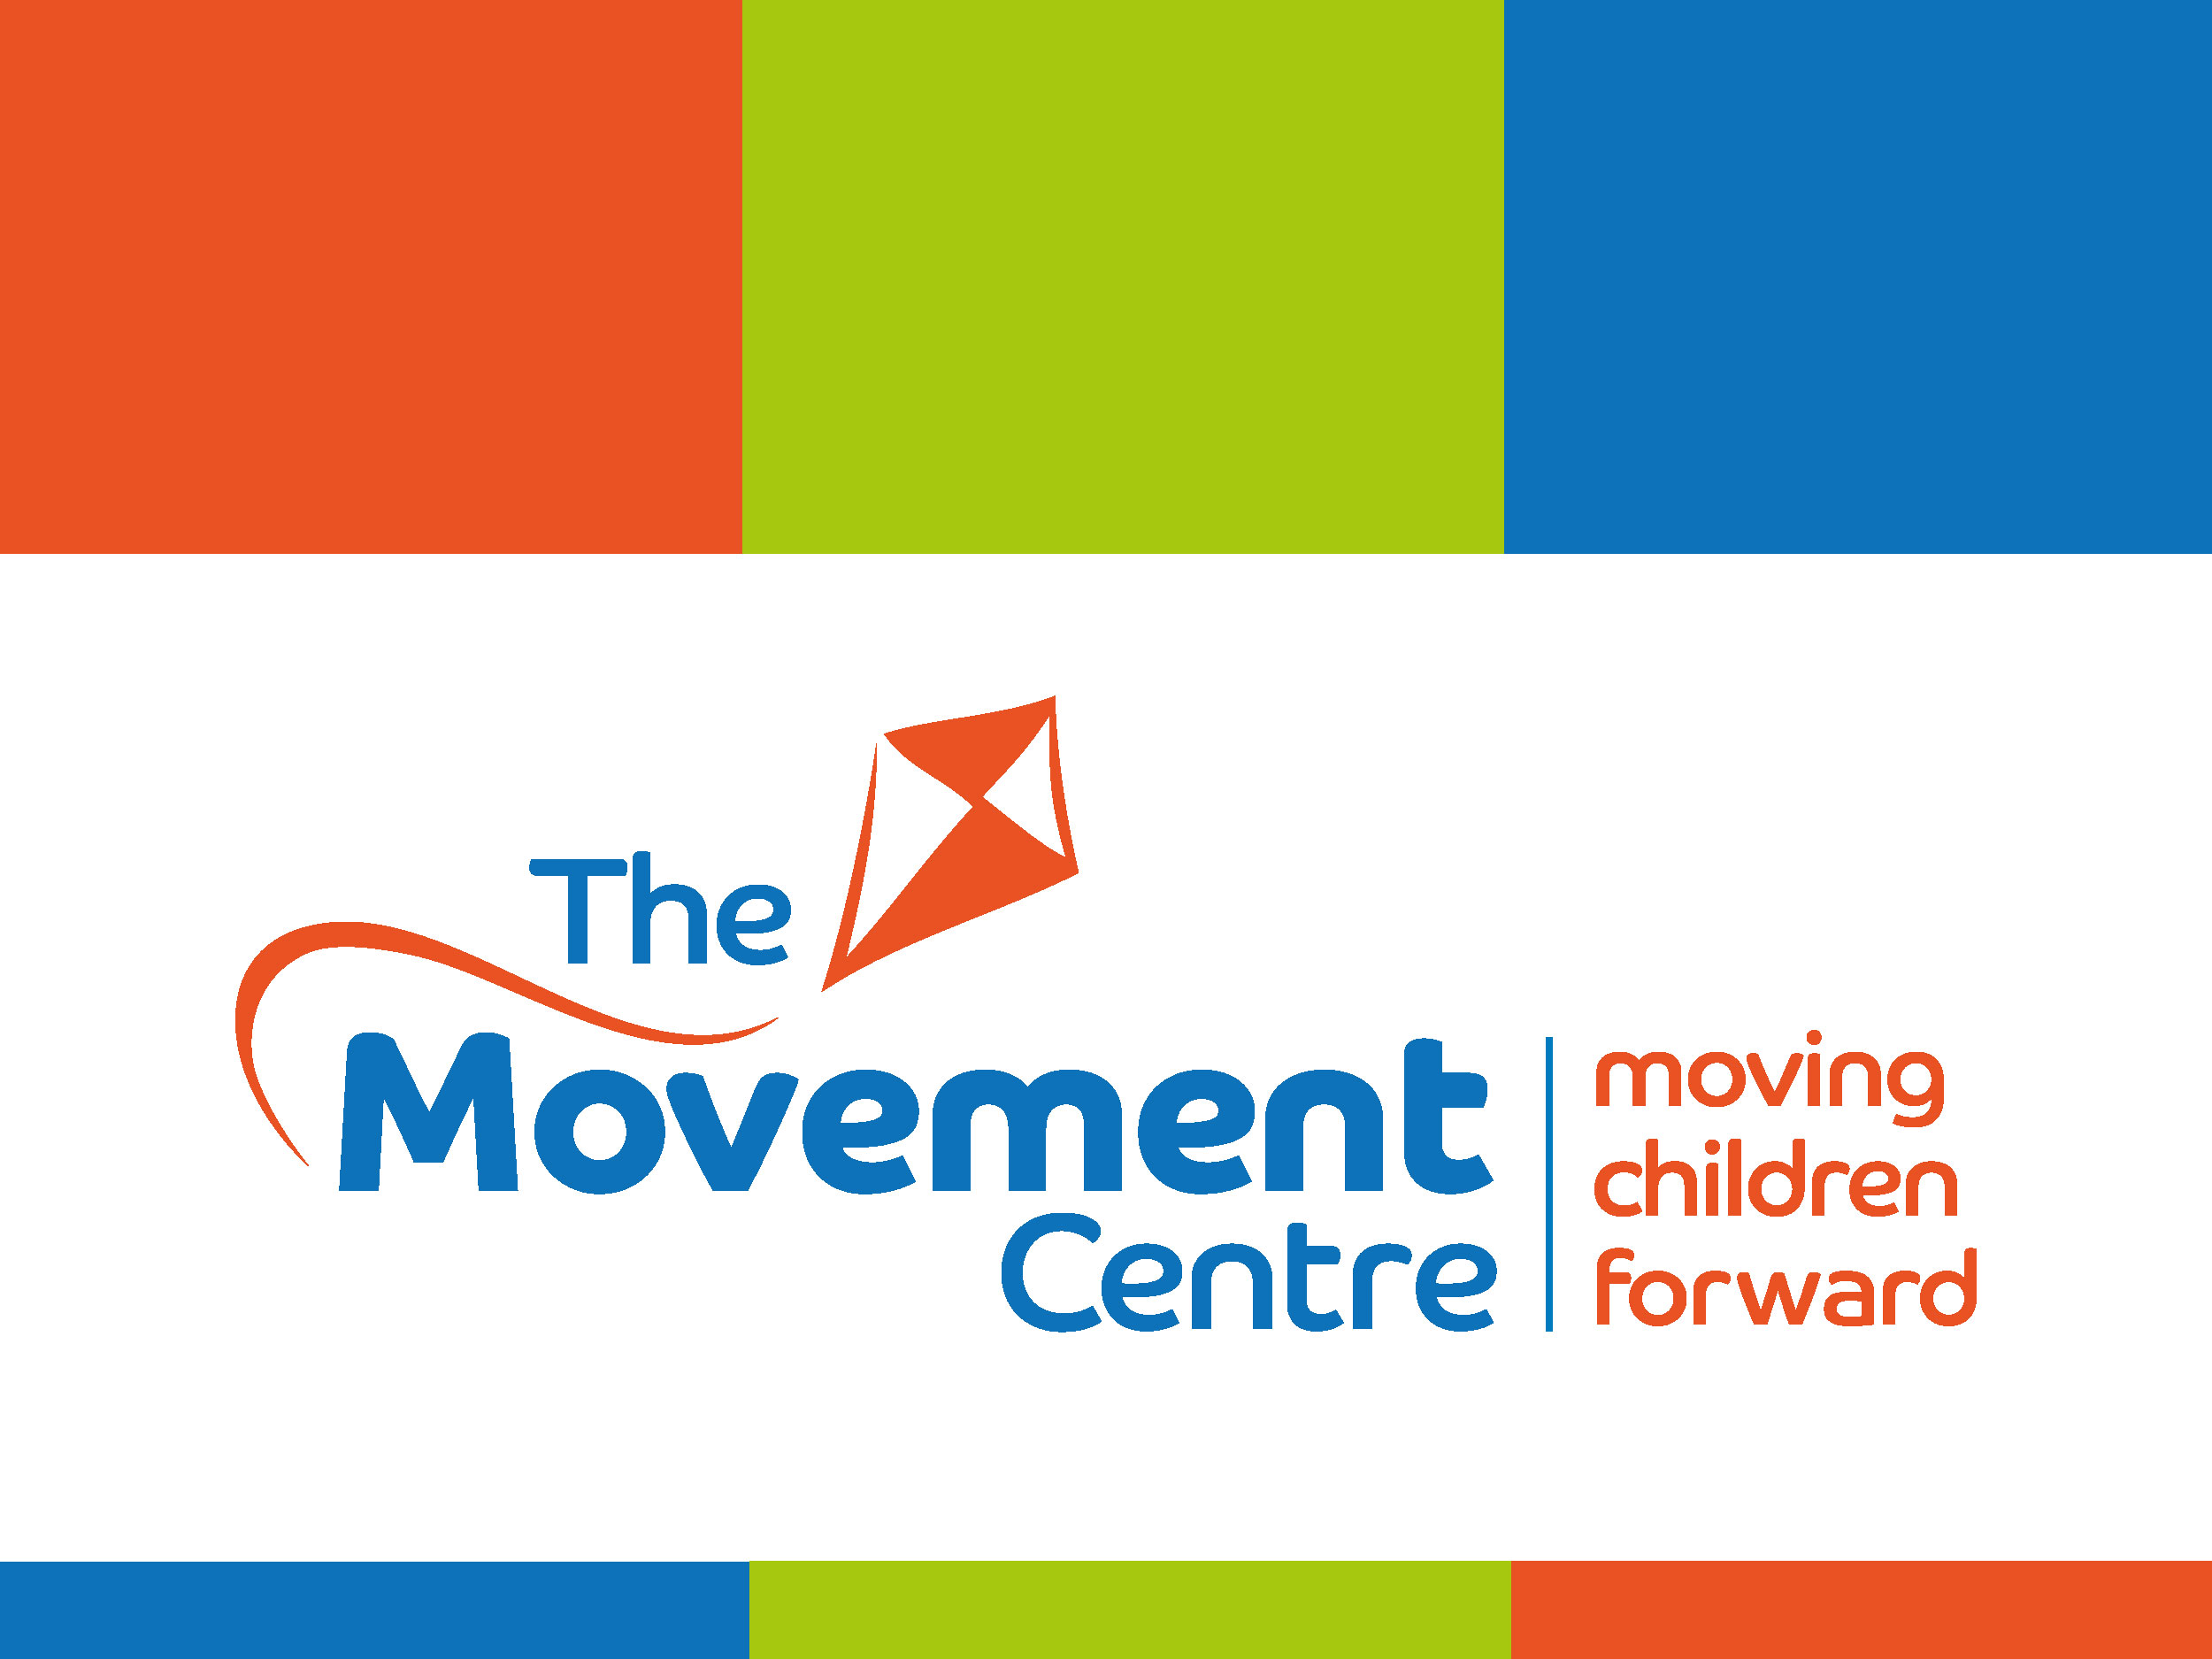 The Movement Centre